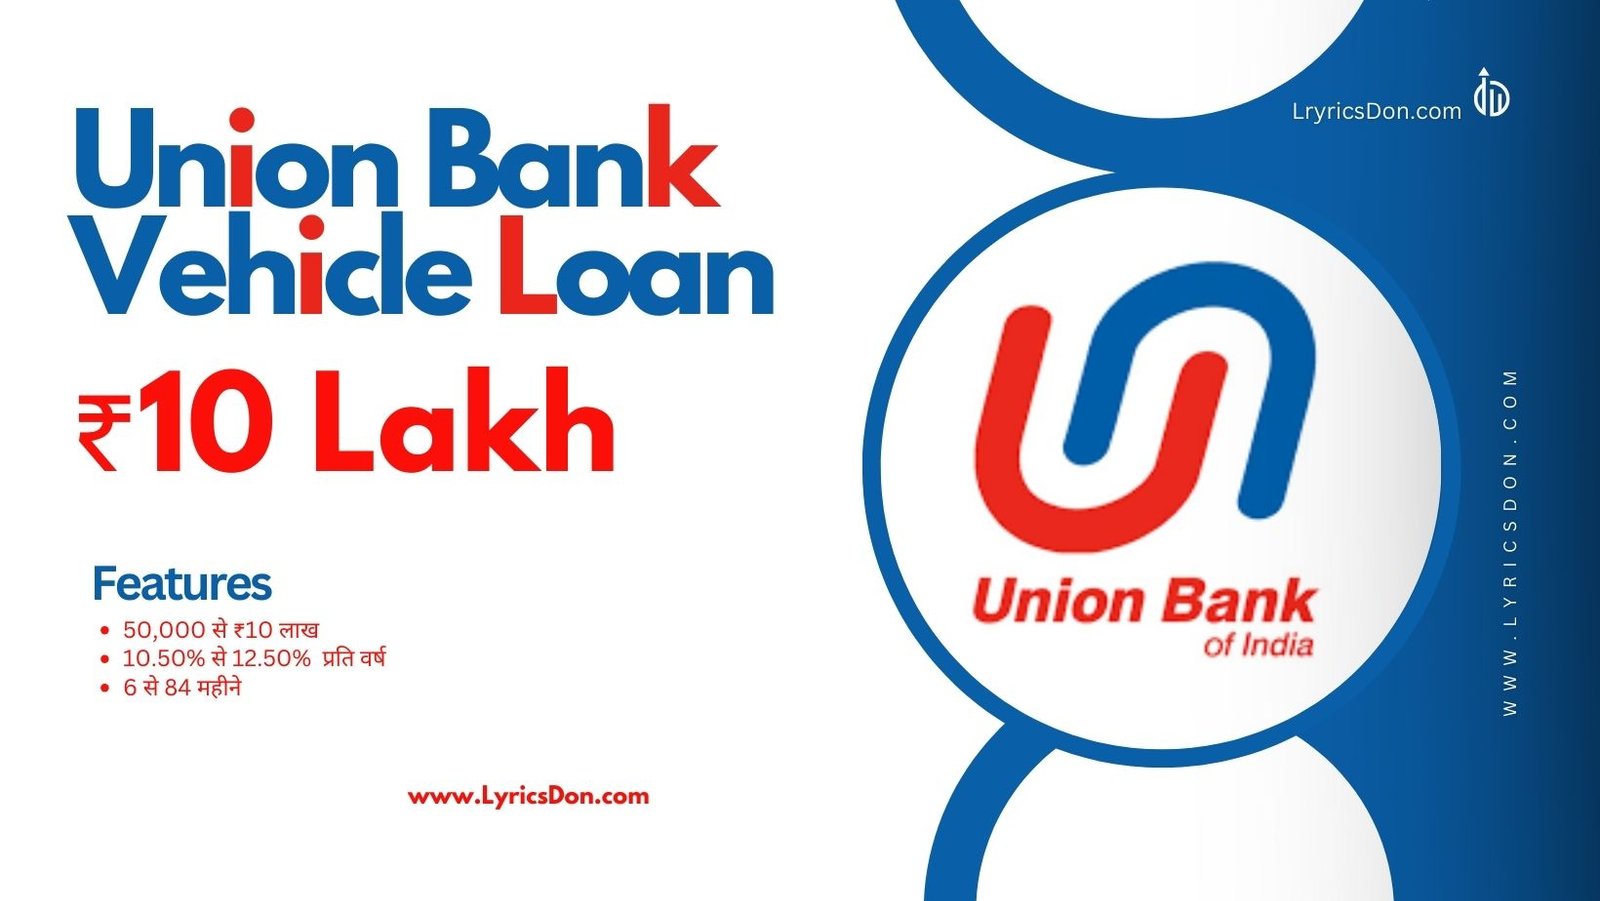 Union Bank Of India Bank Vehicle Loan Amount